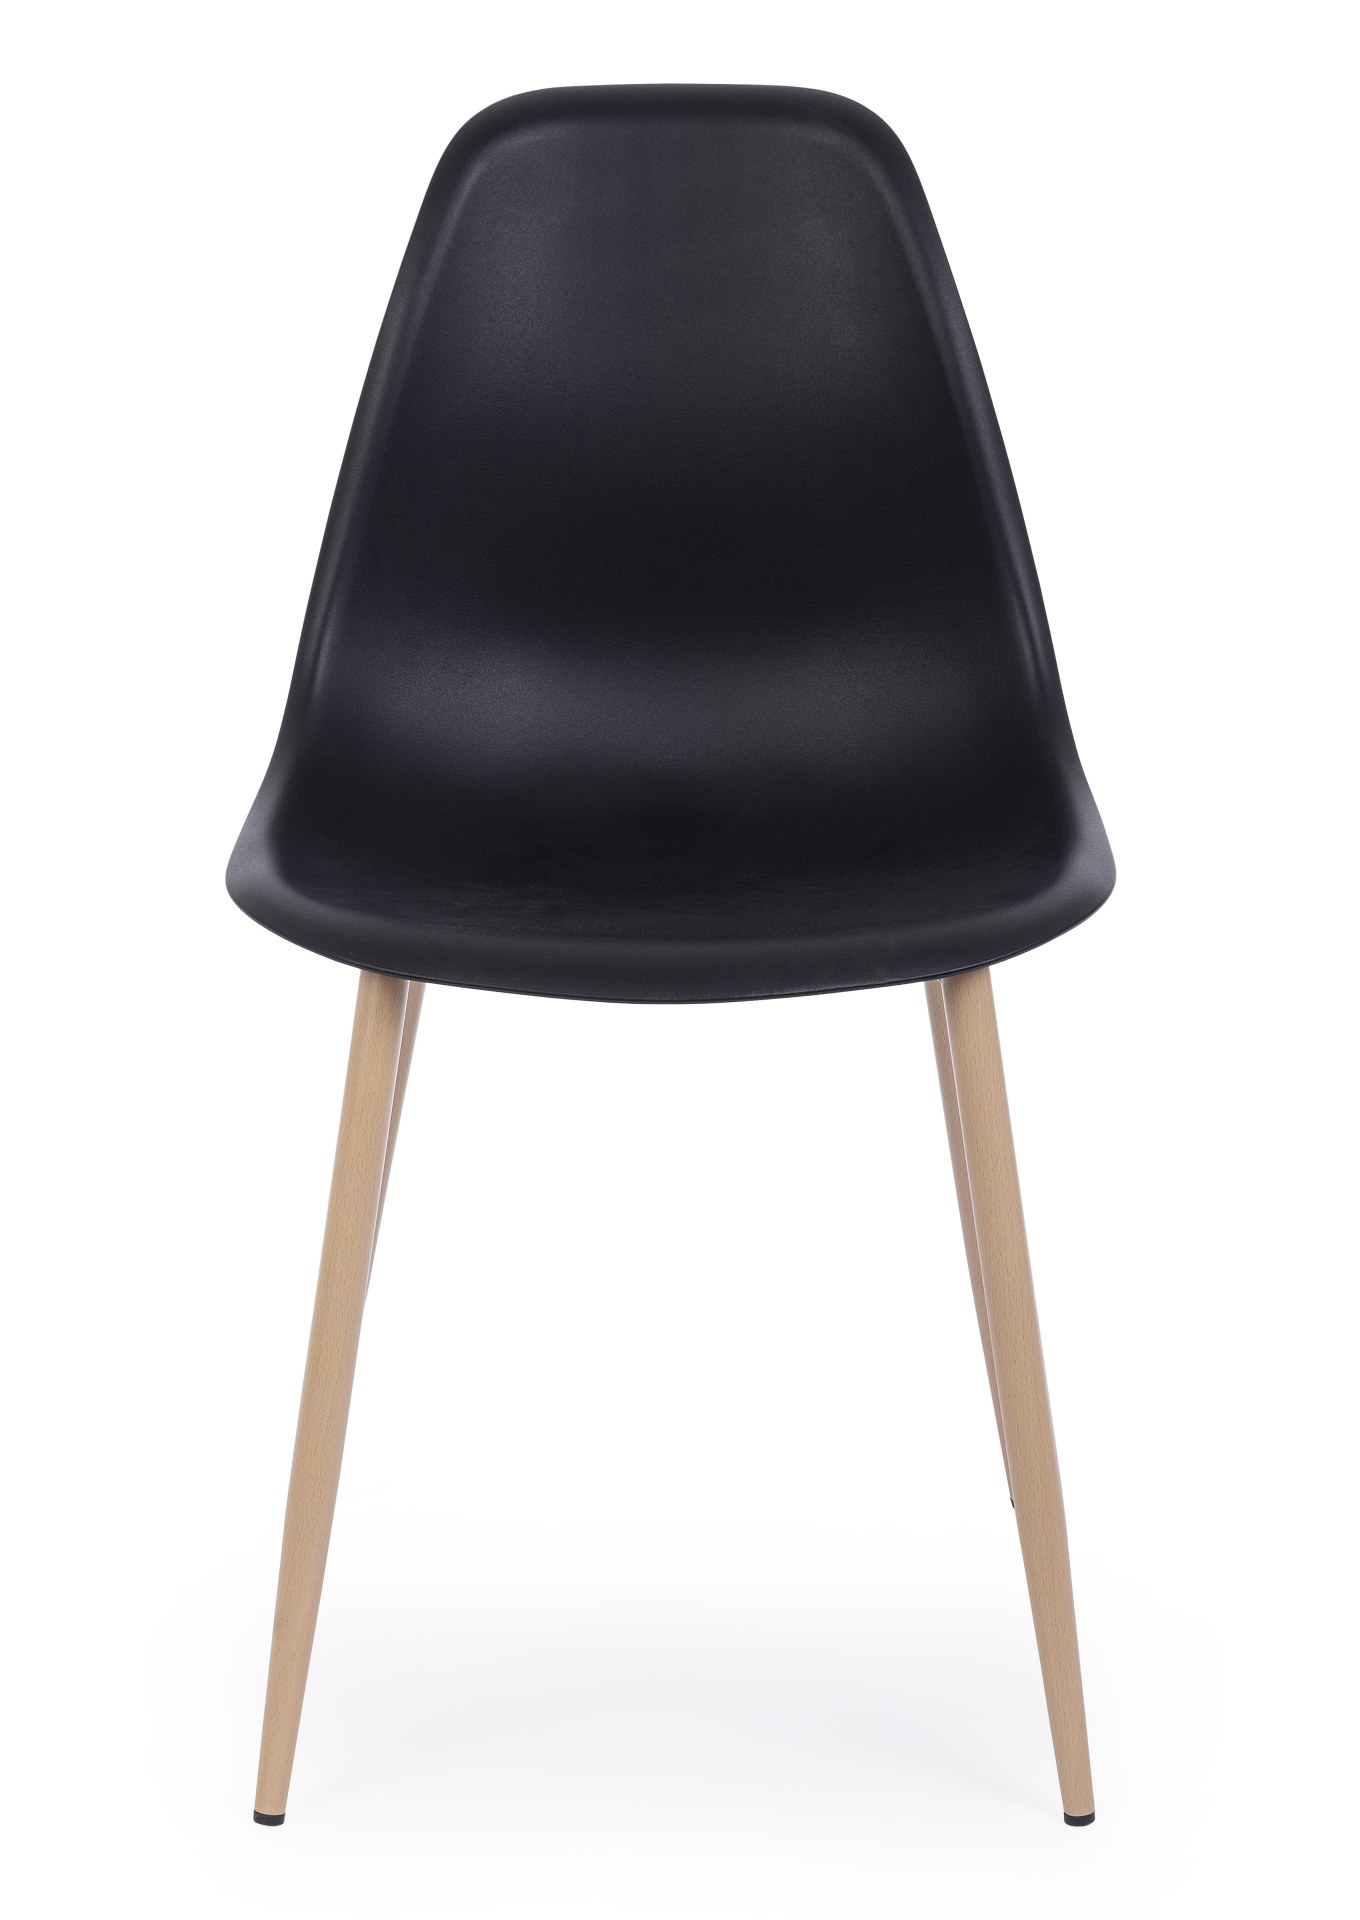 Der Stuhl Mandy überzeugt mit seinem modernem Design. Gefertigt wurde der Stuhl aus Kunststoff, welcher einen schwarzen Farbton besitzt. Das Gestell ist aus Metall, welches eine Holz-Optik besitzt. Die Sitzhöhe des Stuhls ist 45 cm.